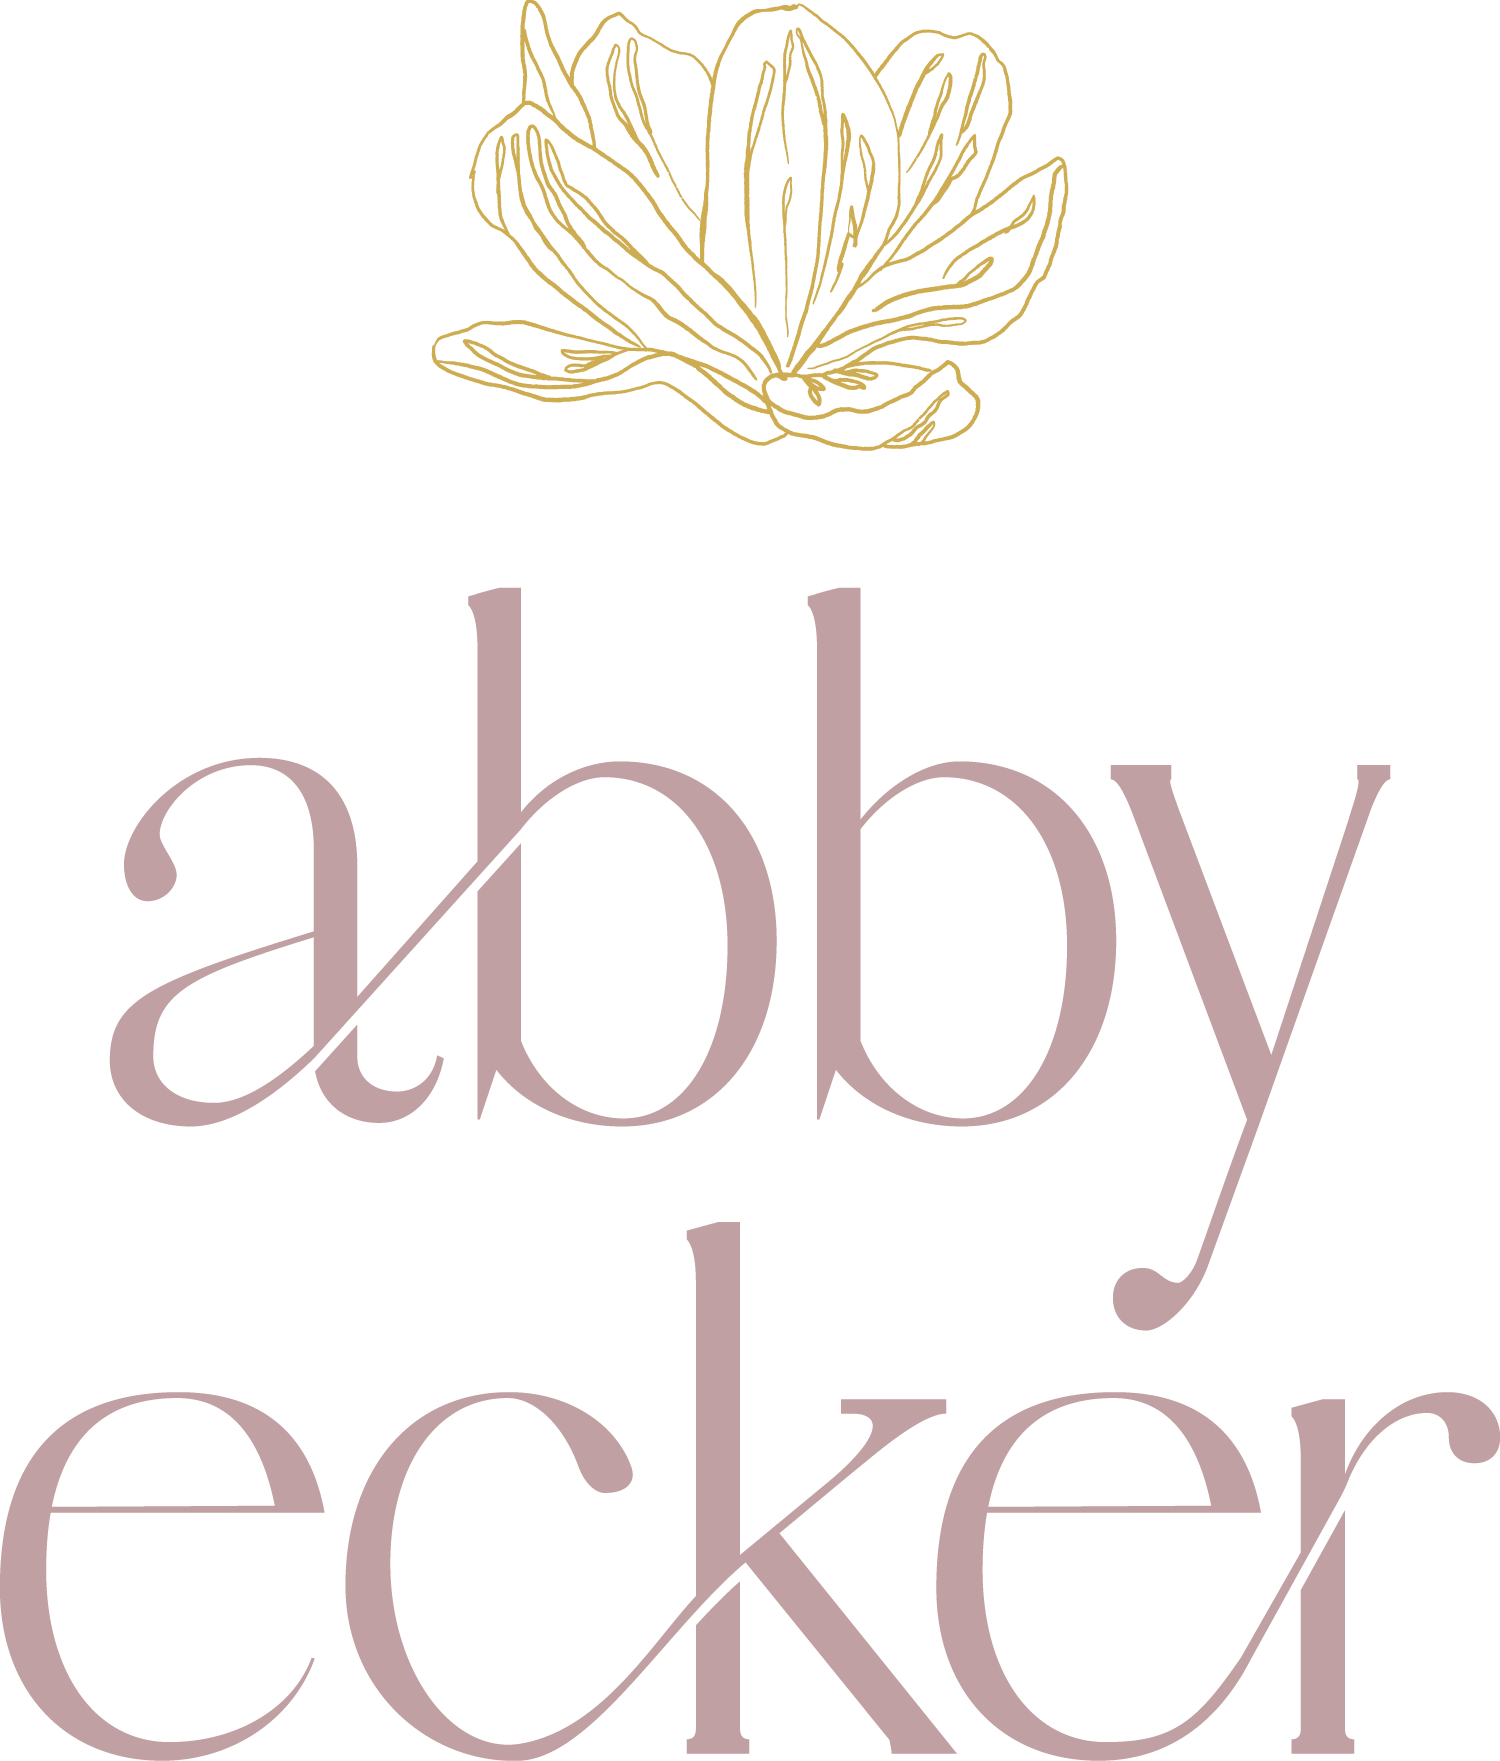 Abby Ecker Fine Art